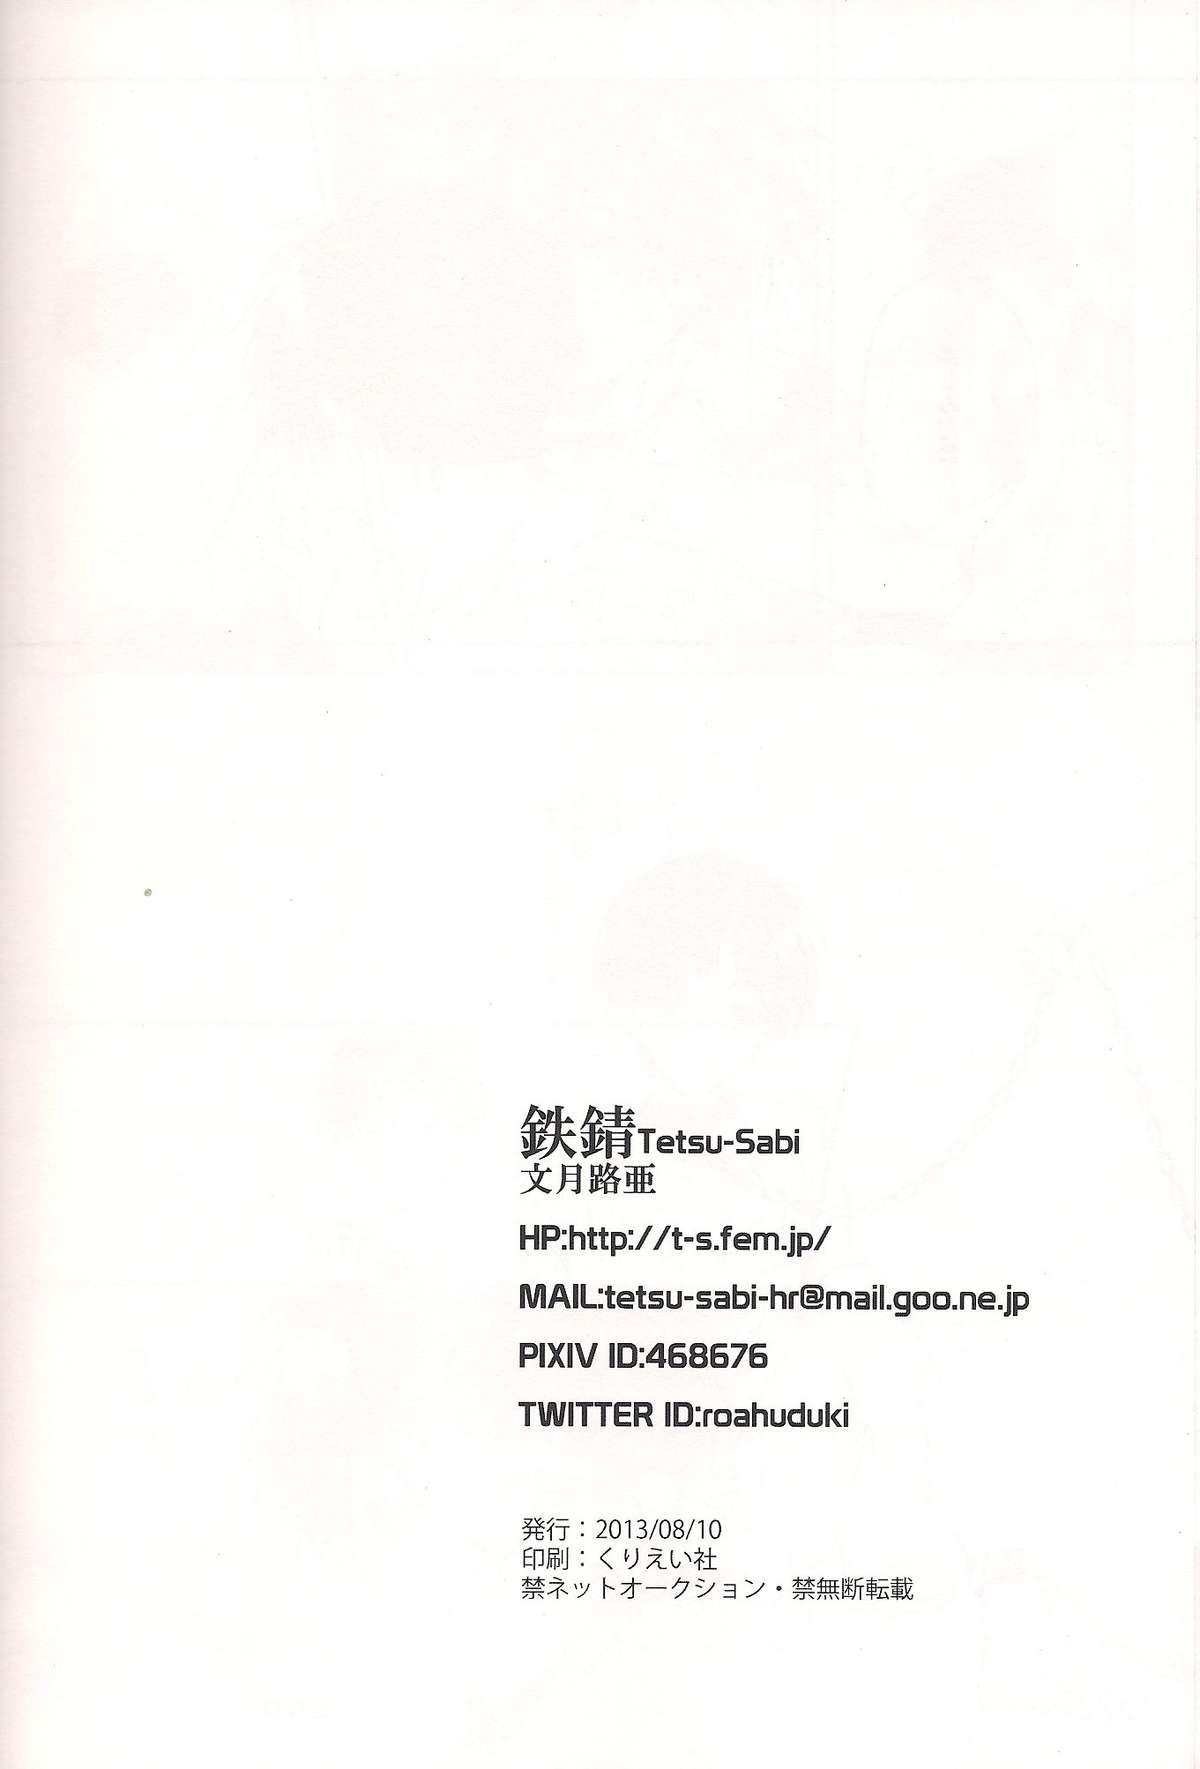 Sapphic Mushibamareta Sekai no Naka de - Neon genesis evangelion Semen - Page 54